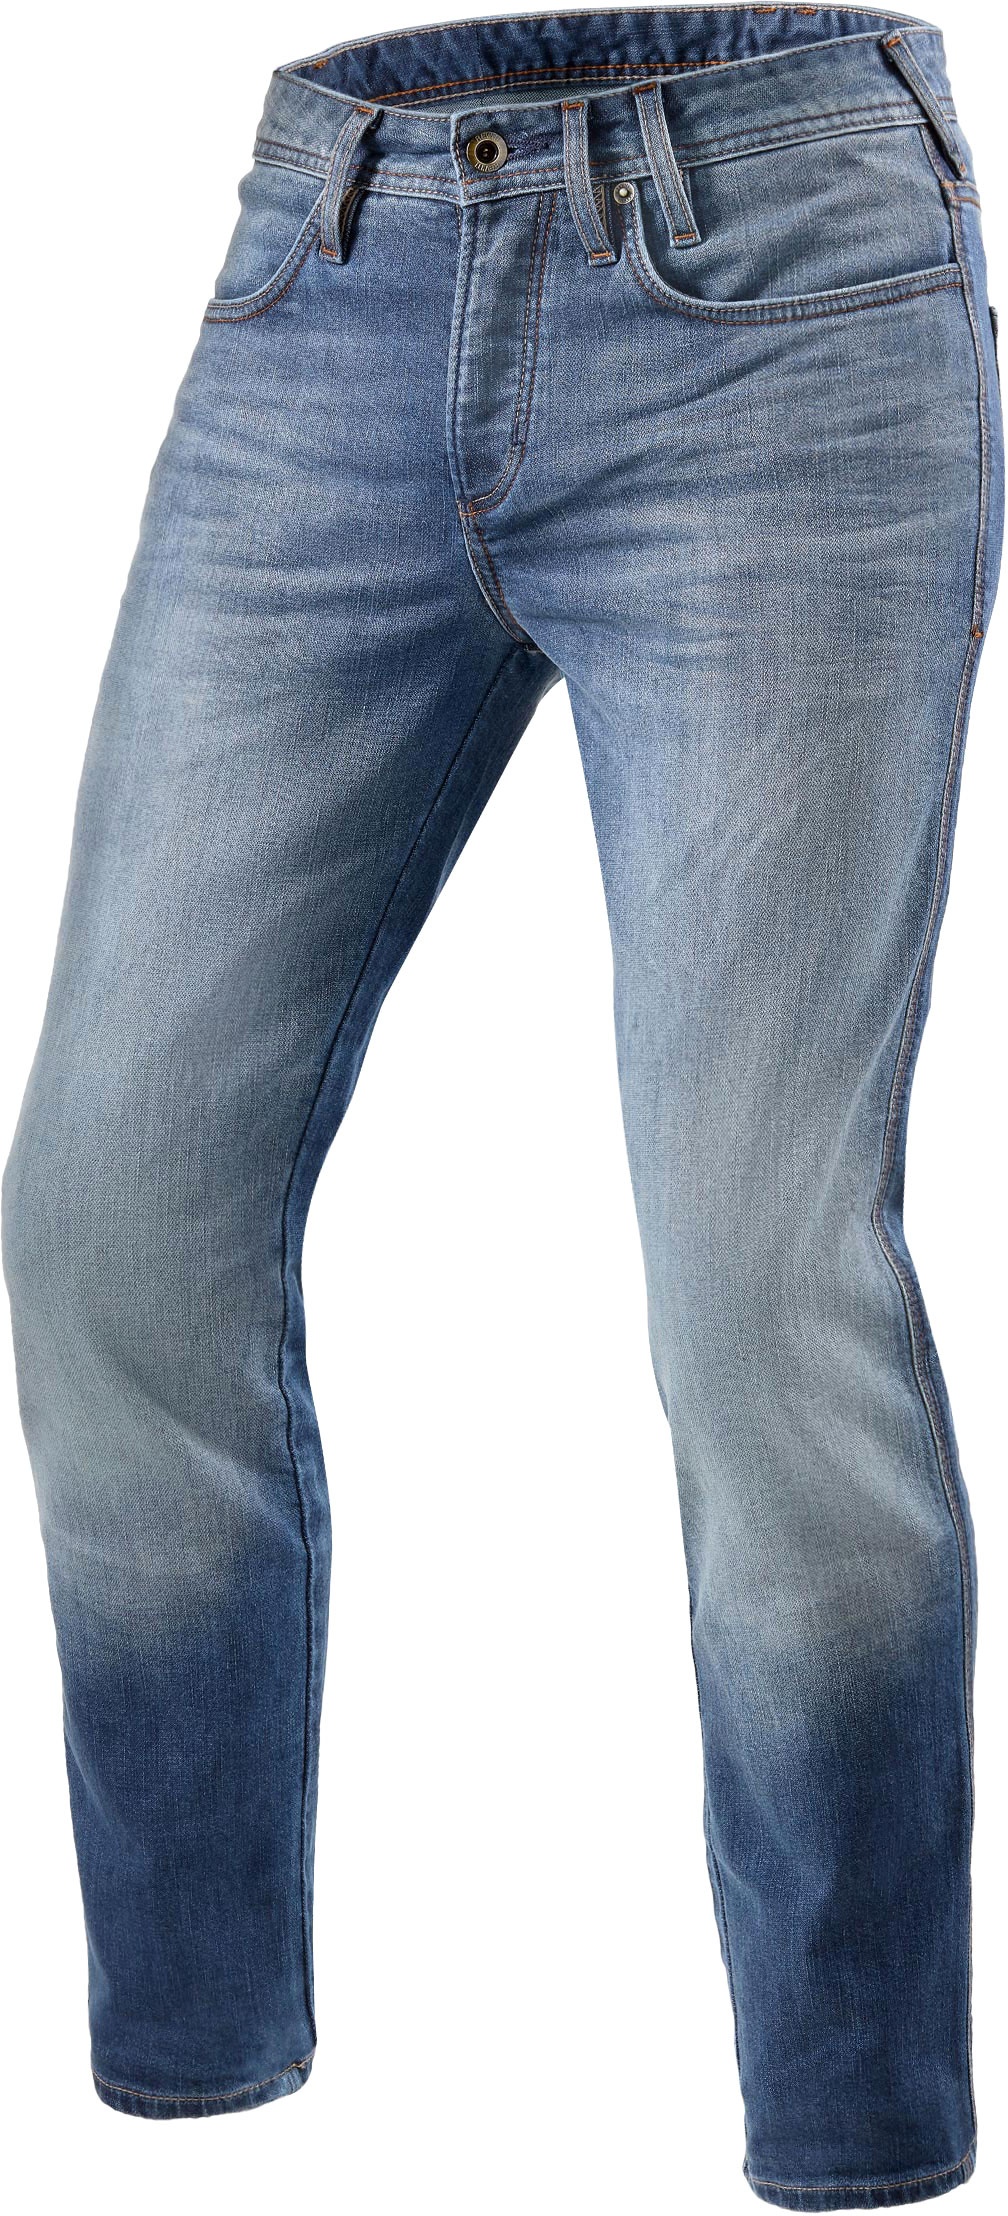 Revit Piston 2, jeans - Bleu - W28/L34